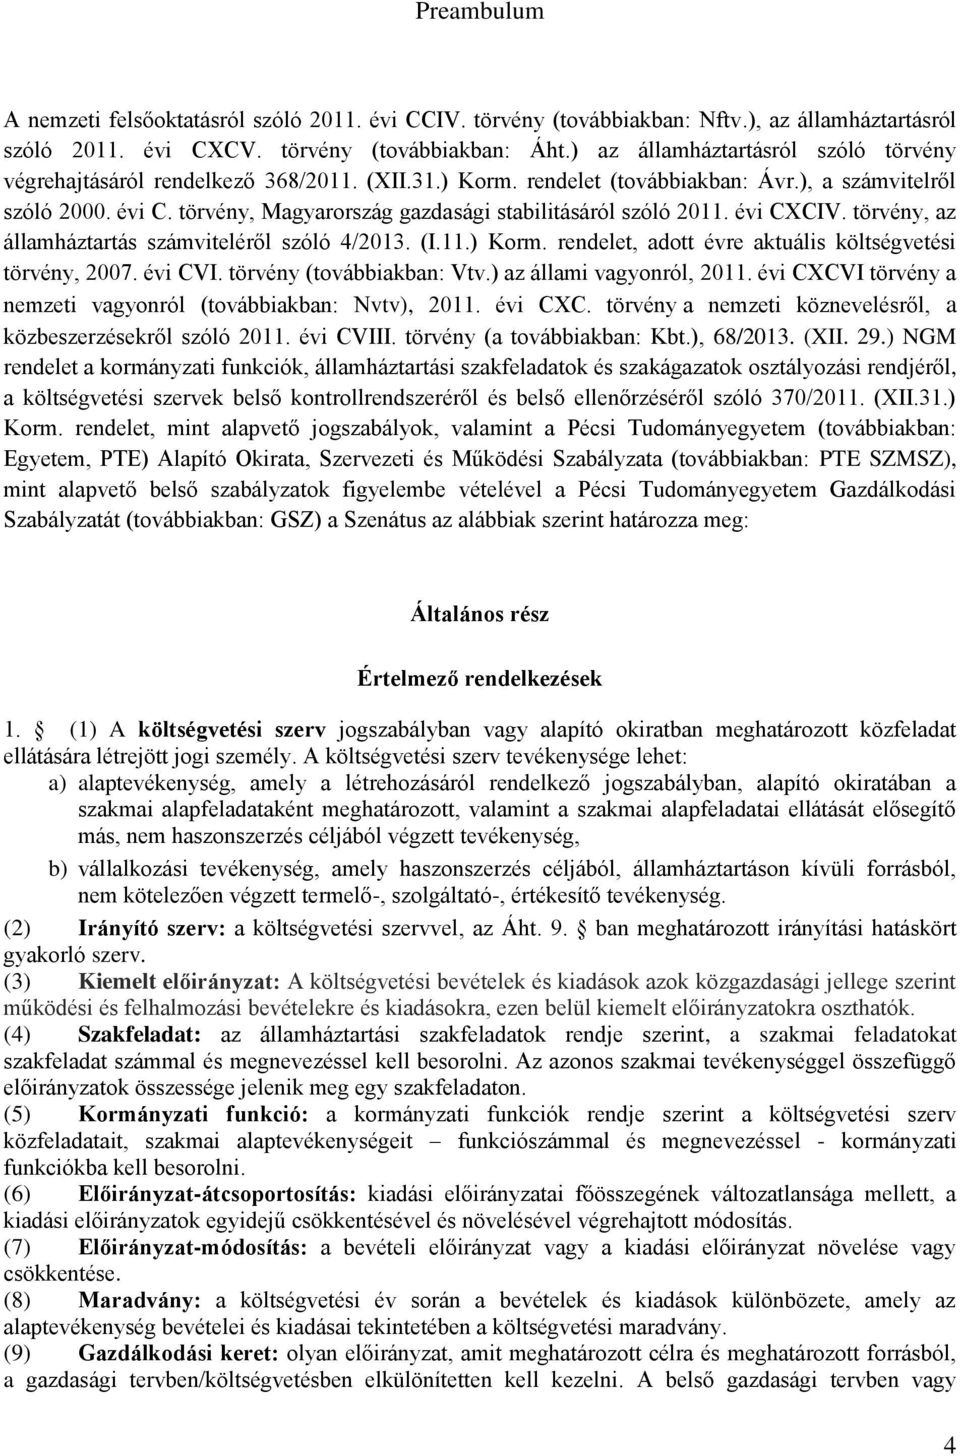 törvény, Magyarország gazdasági stabilitásáról szóló 2011. évi CXCIV. törvény, az államháztartás számviteléről szóló 4/2013. (I.11.) Korm. rendelet, adott évre aktuális költségvetési törvény, 2007.